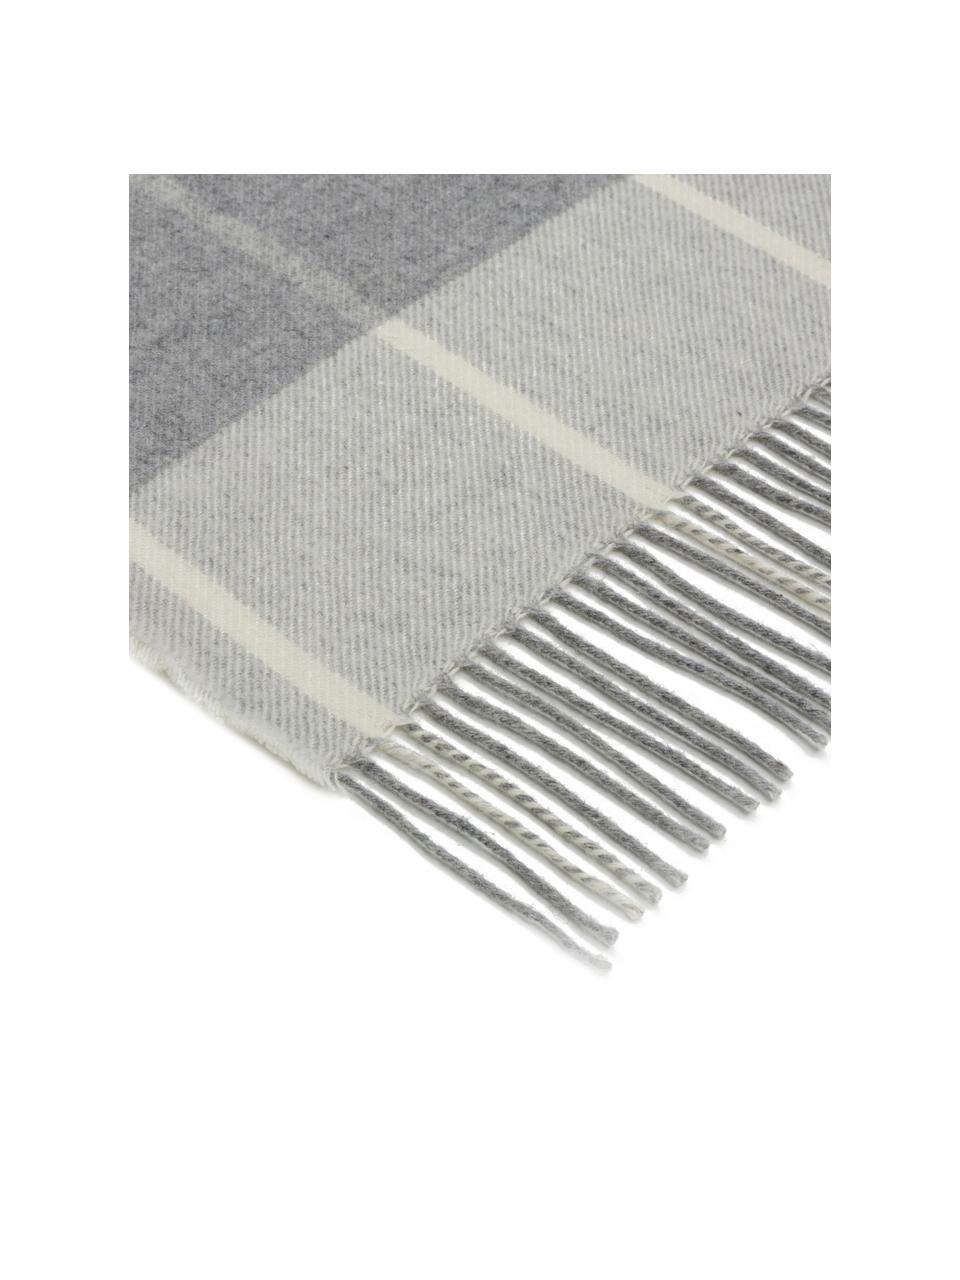 Plaid en laine et cachemire gris clair à carreaux Farison, 90 % laine, 10 % cachemire, Gris clair, gris moyen, larg. 140 x long. 200 cm